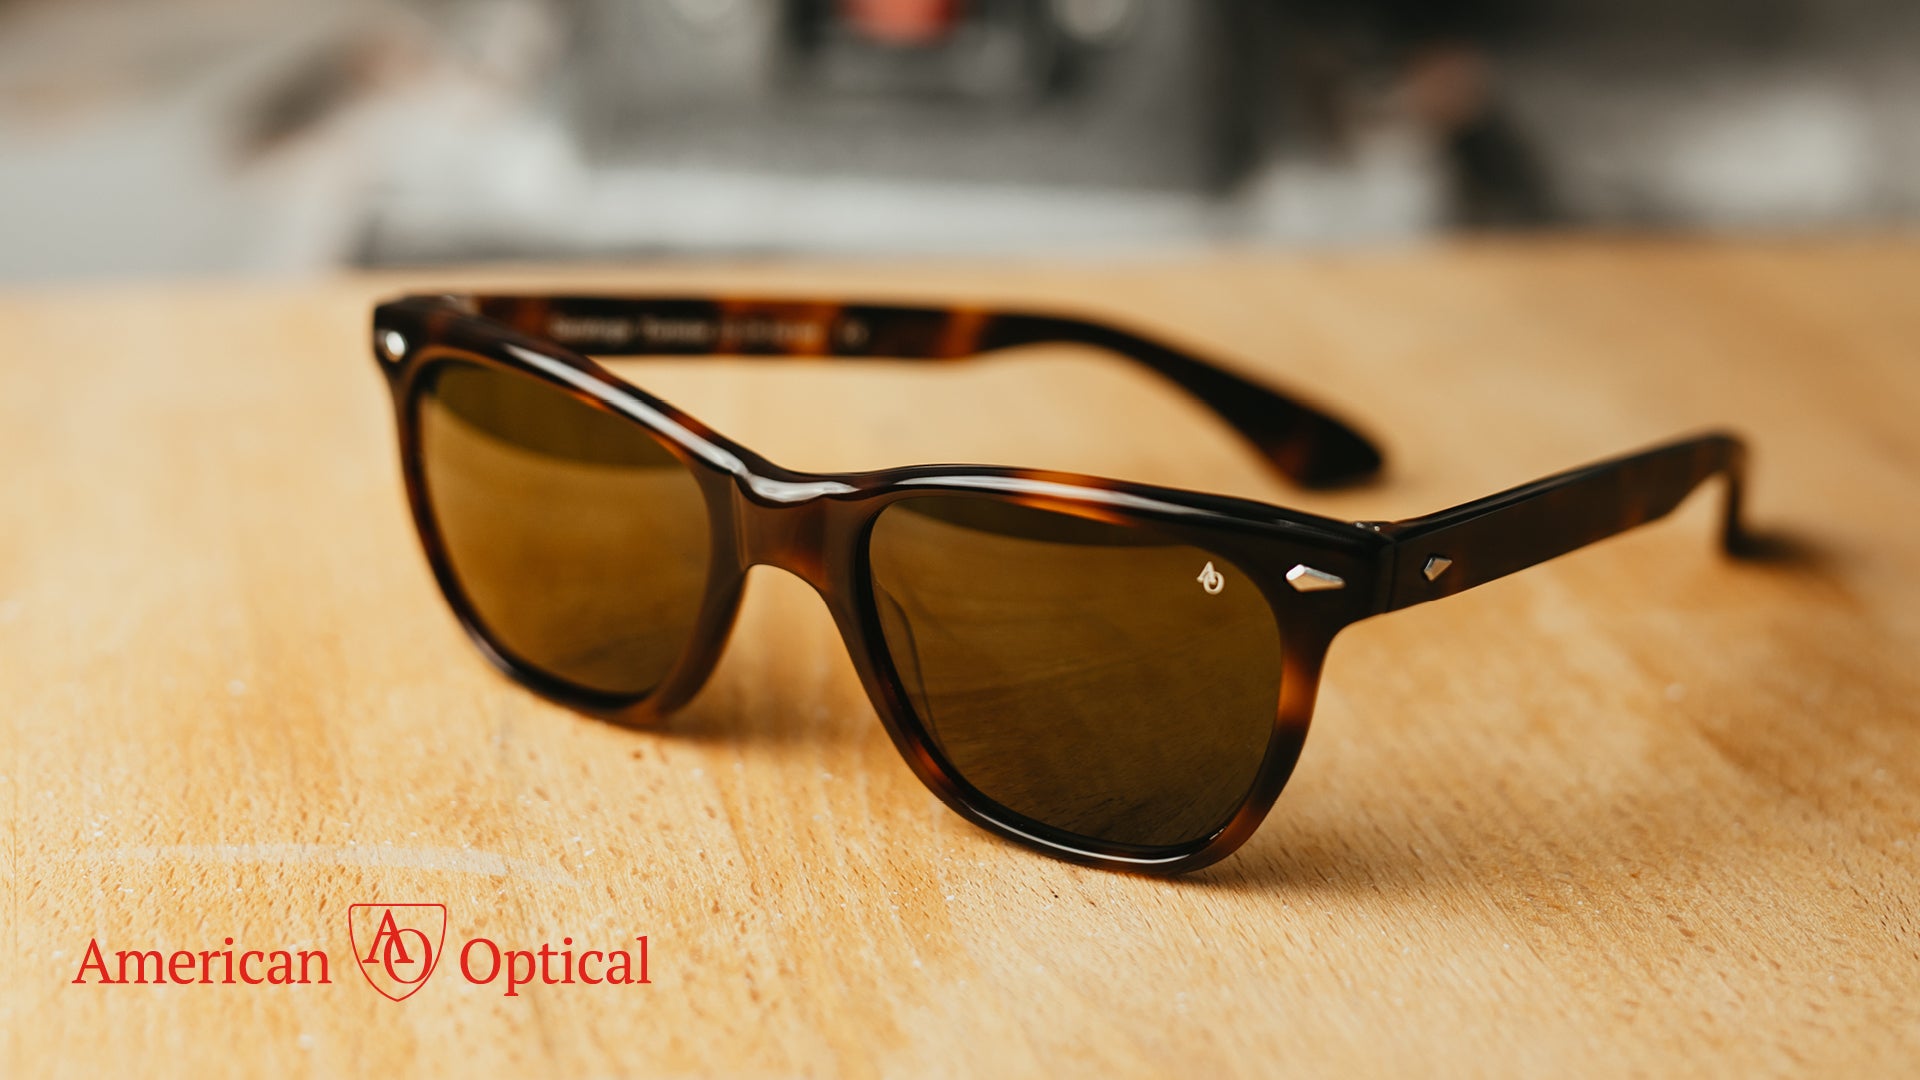 American Optical Prescription Sunglasses